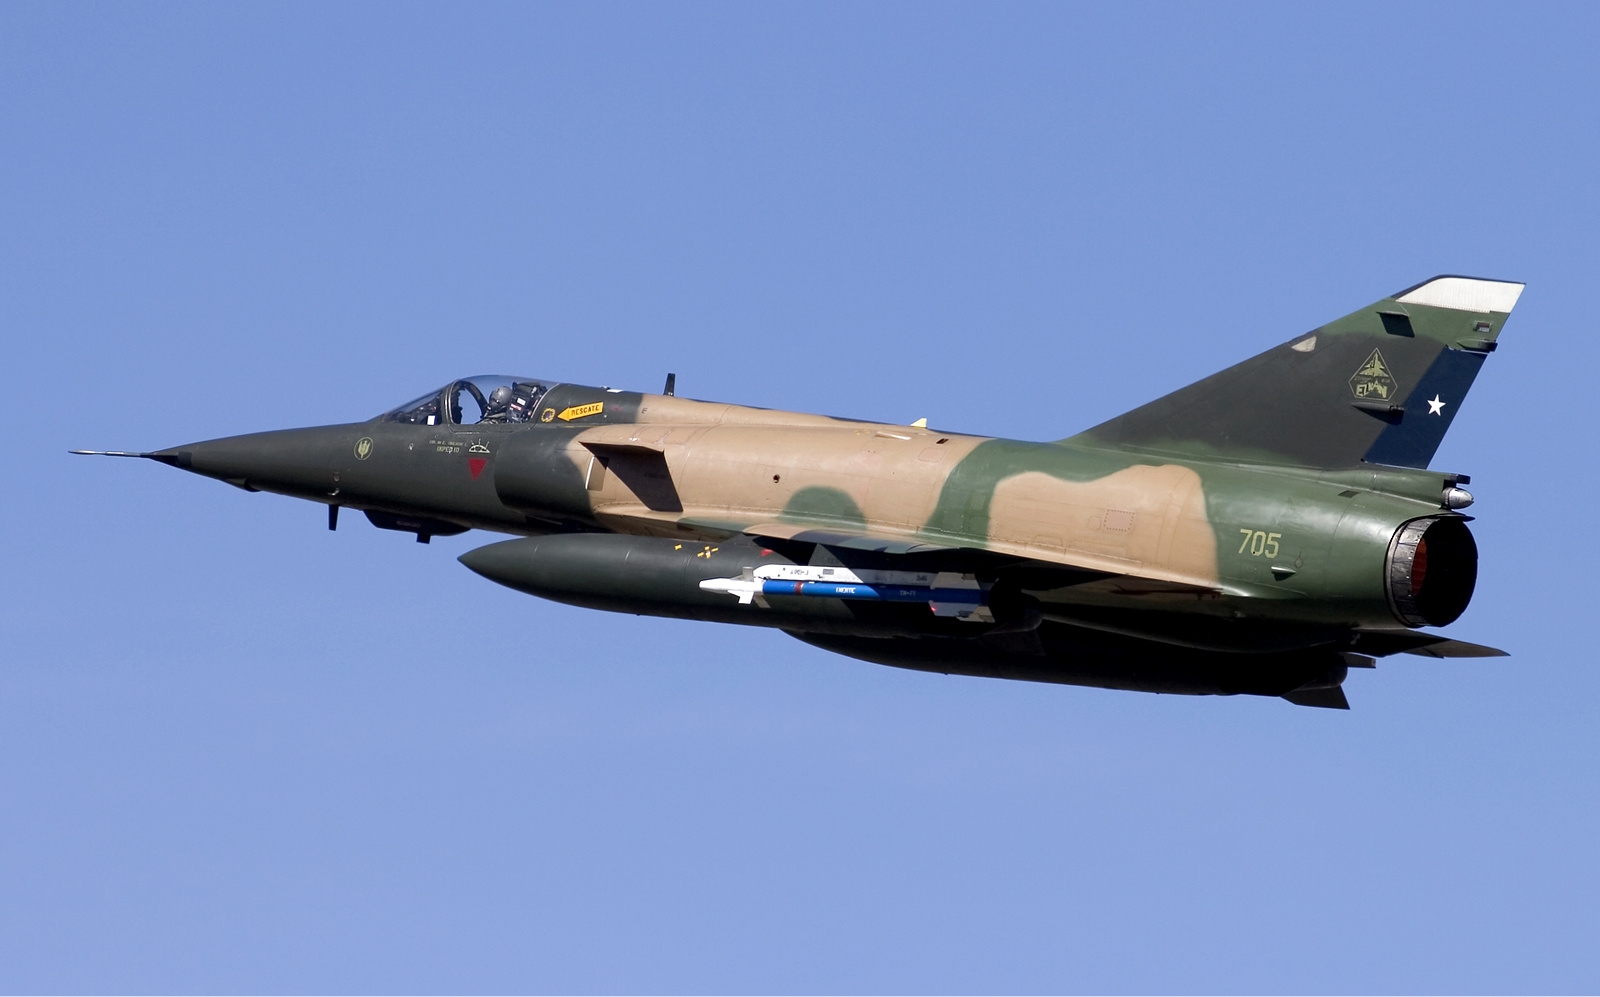 Η κρίση με την Ινδία ανάγκασε το Πακιστάν να αγοράσει μεταχειρισμένα Mirage 5 από την Αίγυπτο